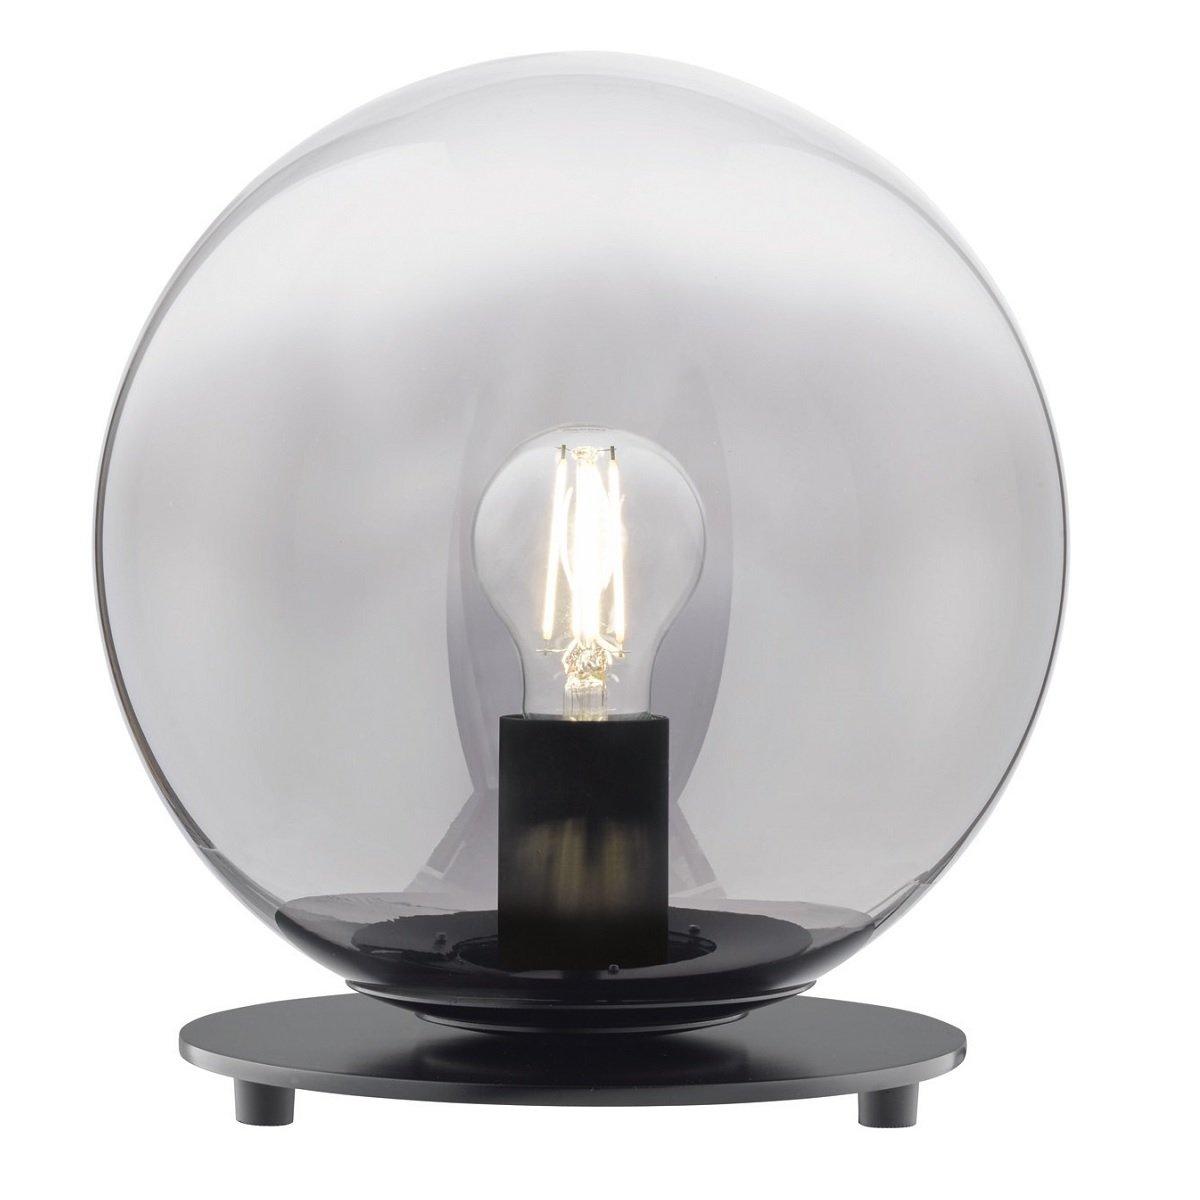 SCHÖNER WOHNEN-Kollektion Tischleuchte MIRROR 25 Leuchten Lampen Shop rauchglas im 850312 online kaufen & 